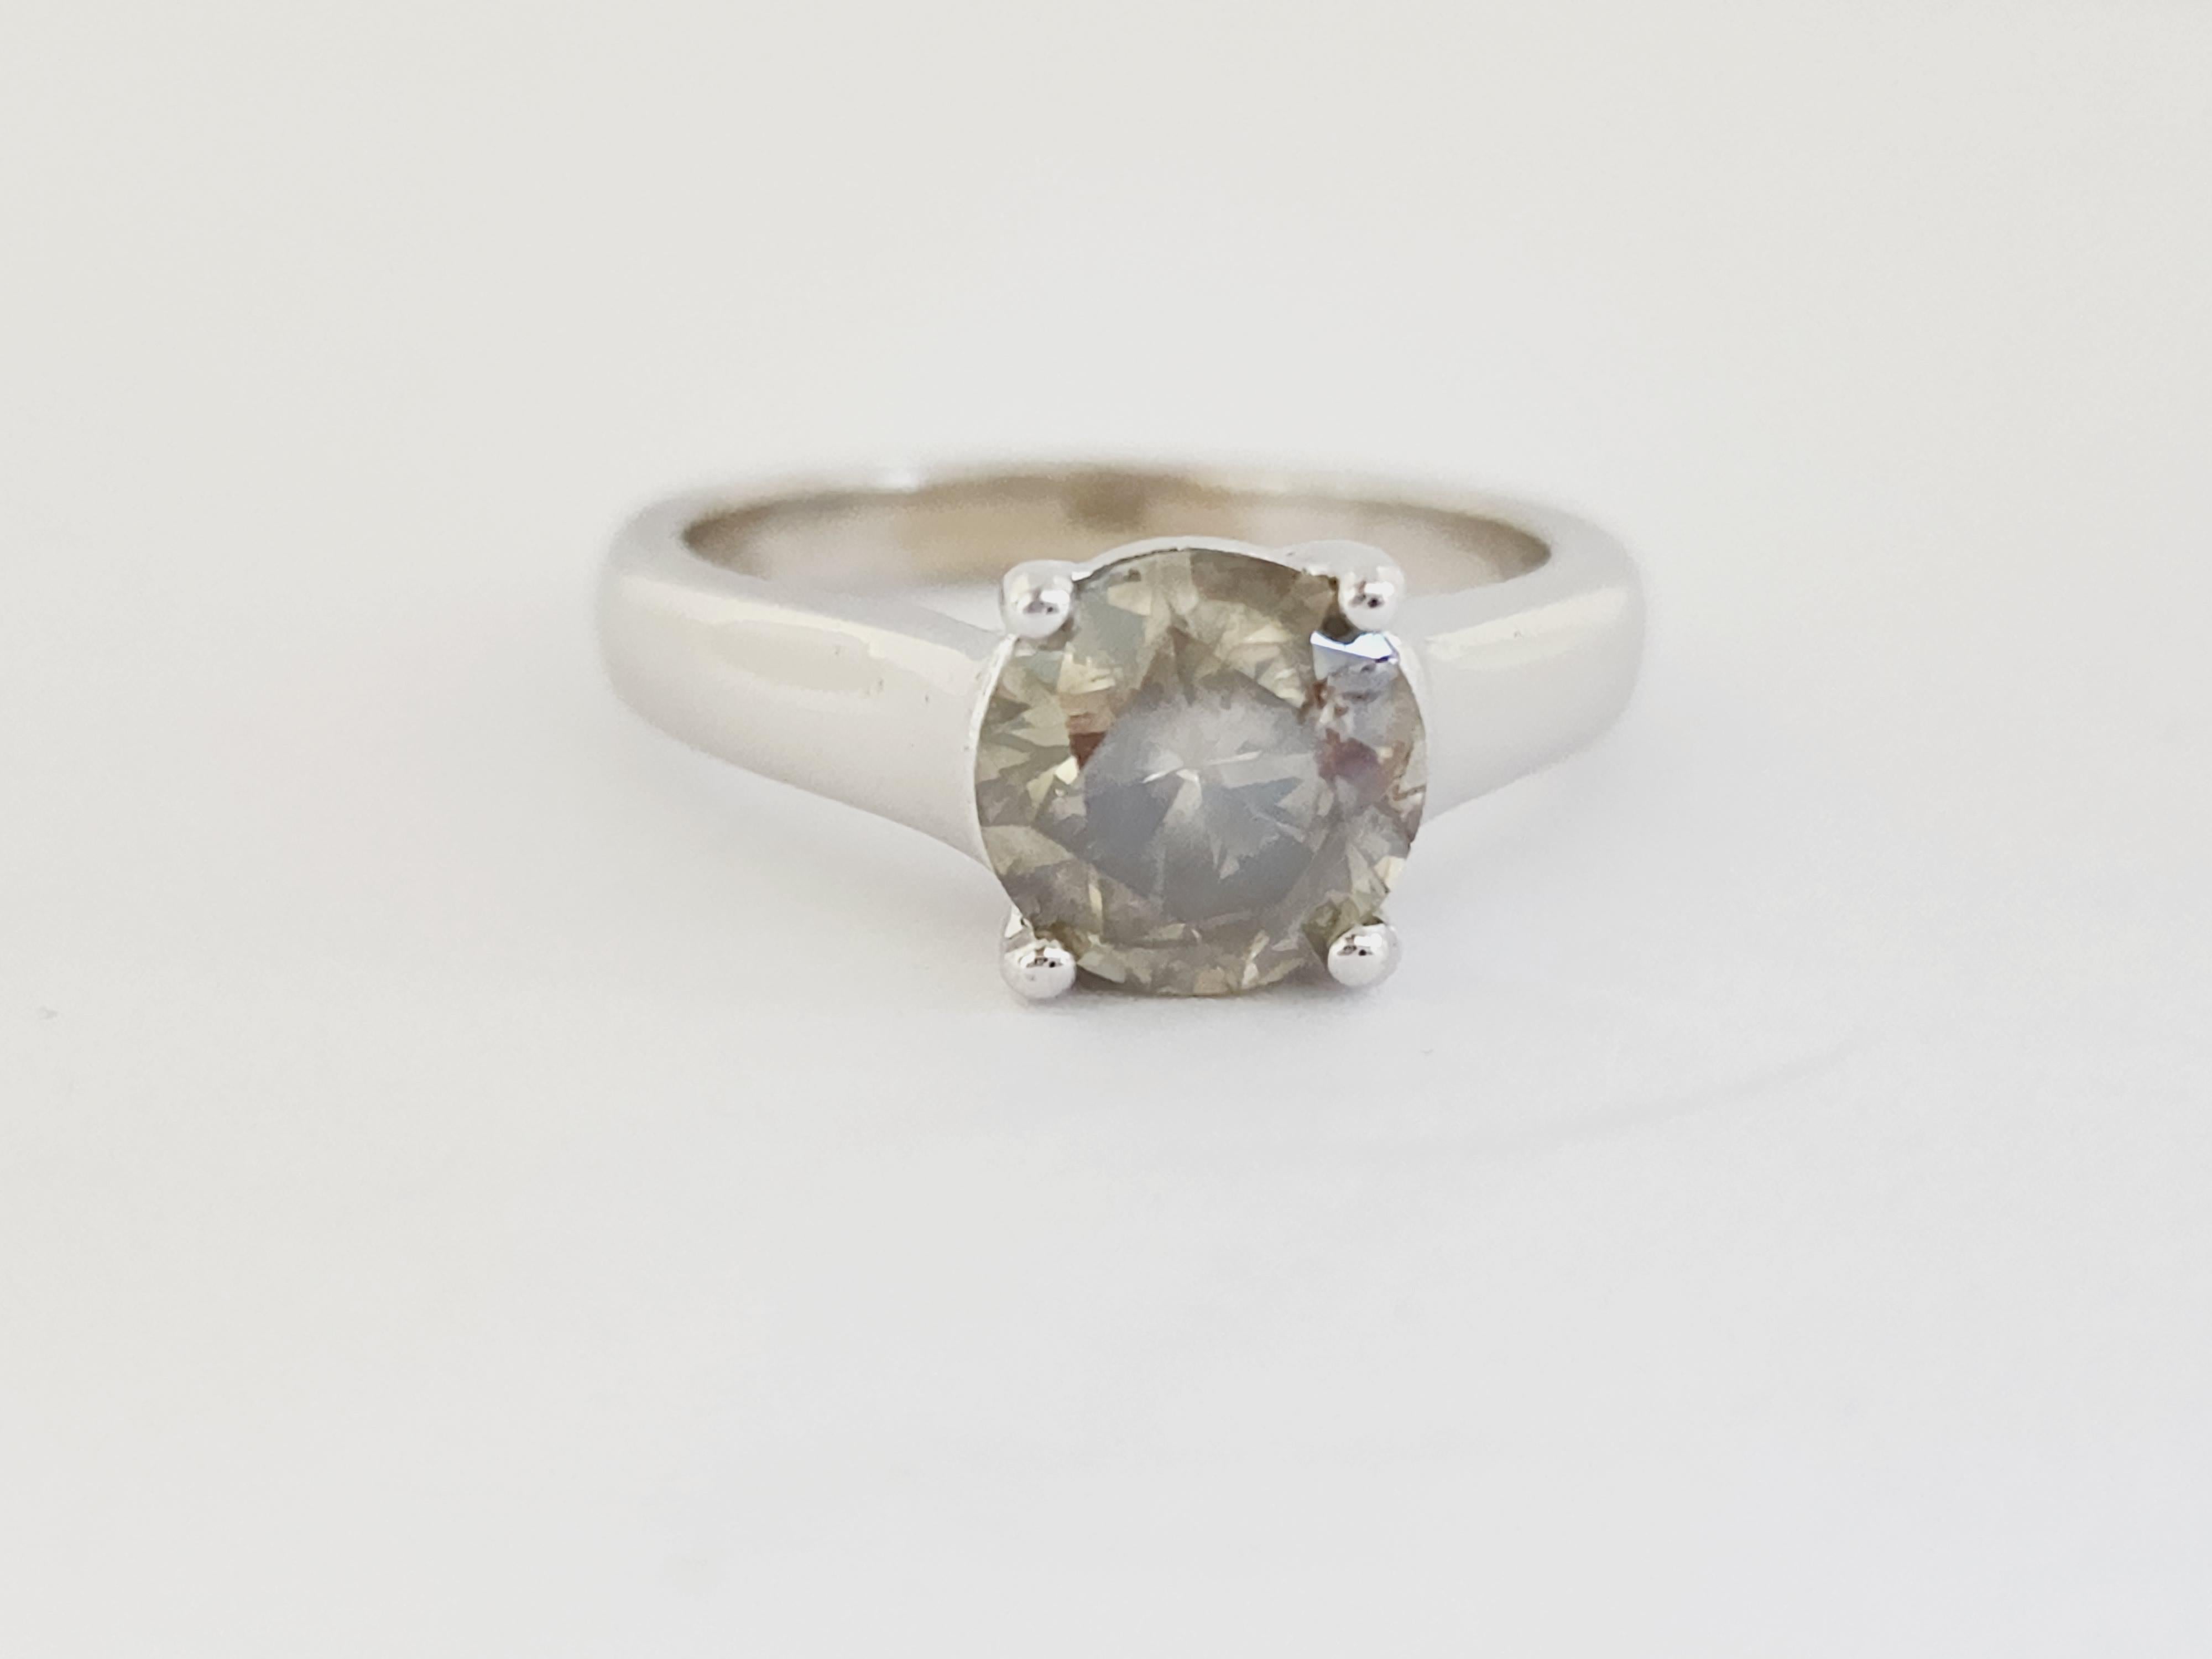 Natural GIA 1.84 Carat Fancy Dark Greenish Yellow-Brown Round Diamond Ring 14 Karat White Gold. Set on 4-prong 14K white gold ring.
Ring size: 6.5